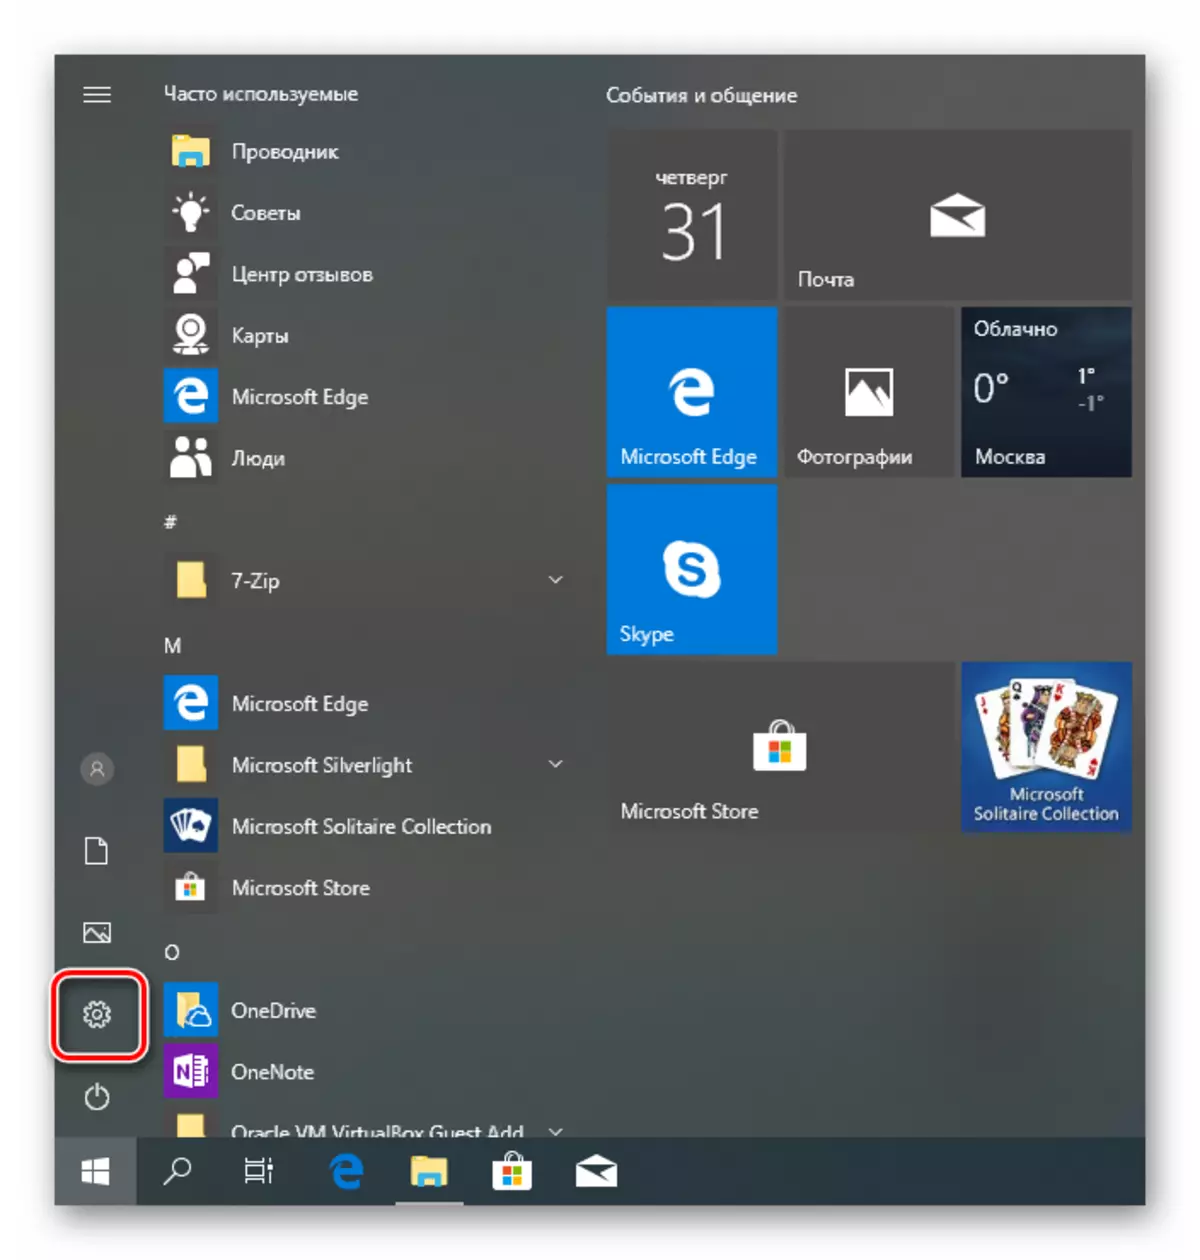 Shkoni në parametrat e sistemit operativ nga menyja e fillimit në Windows 10